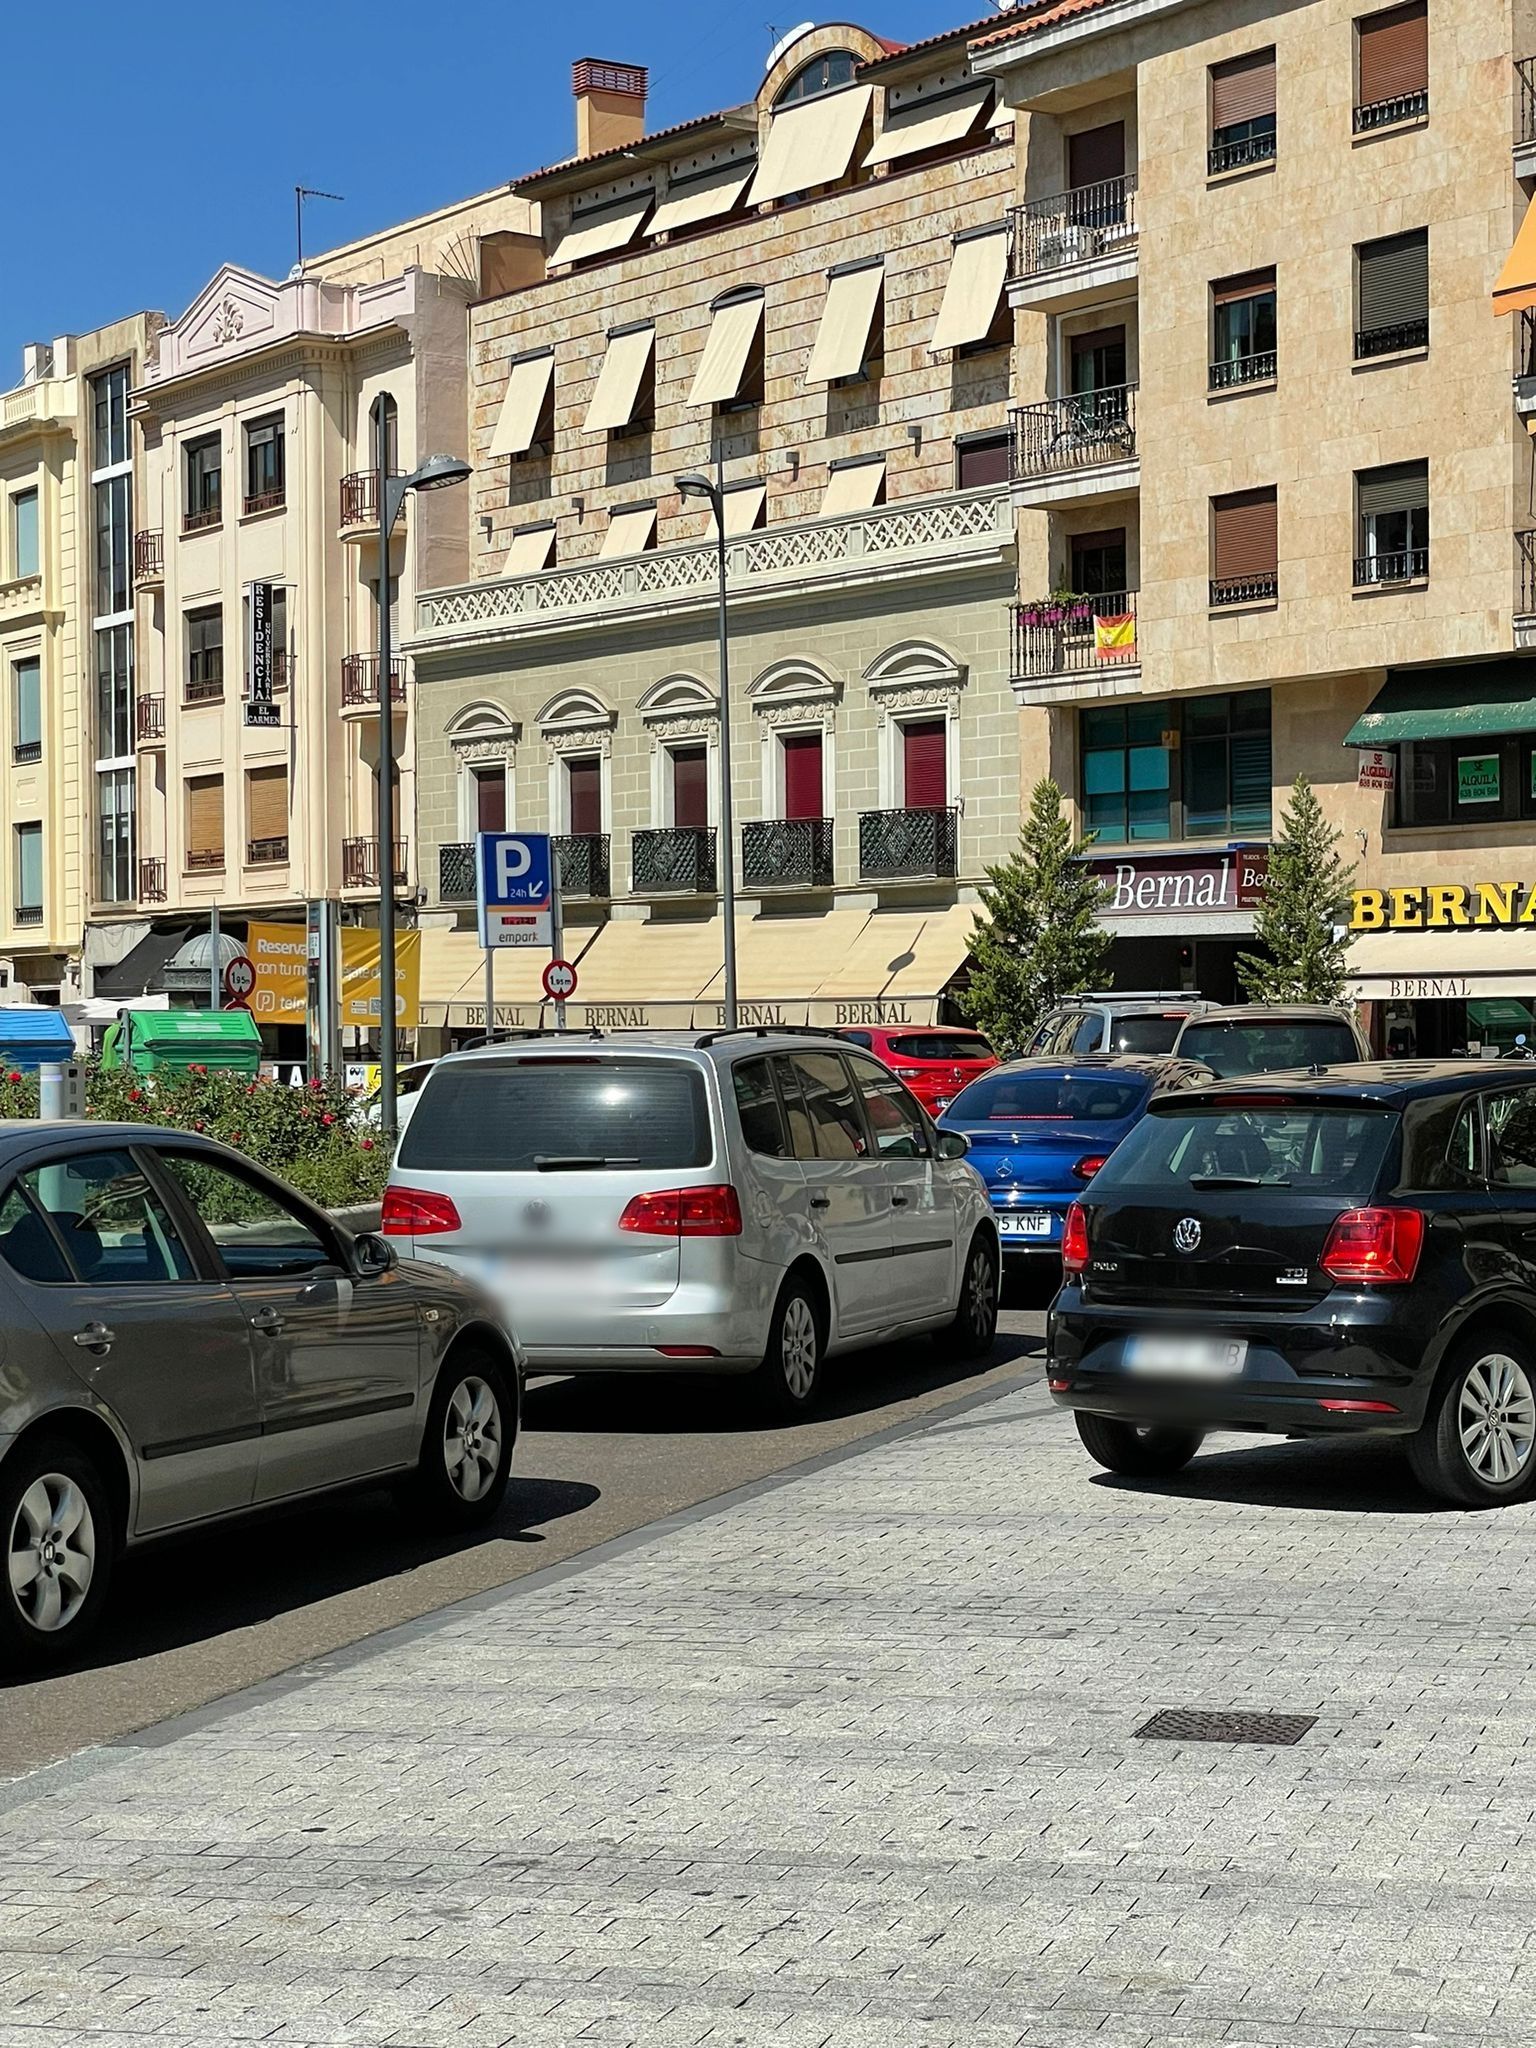 Largas colas para acceder al parking Santa Eulalia (2)